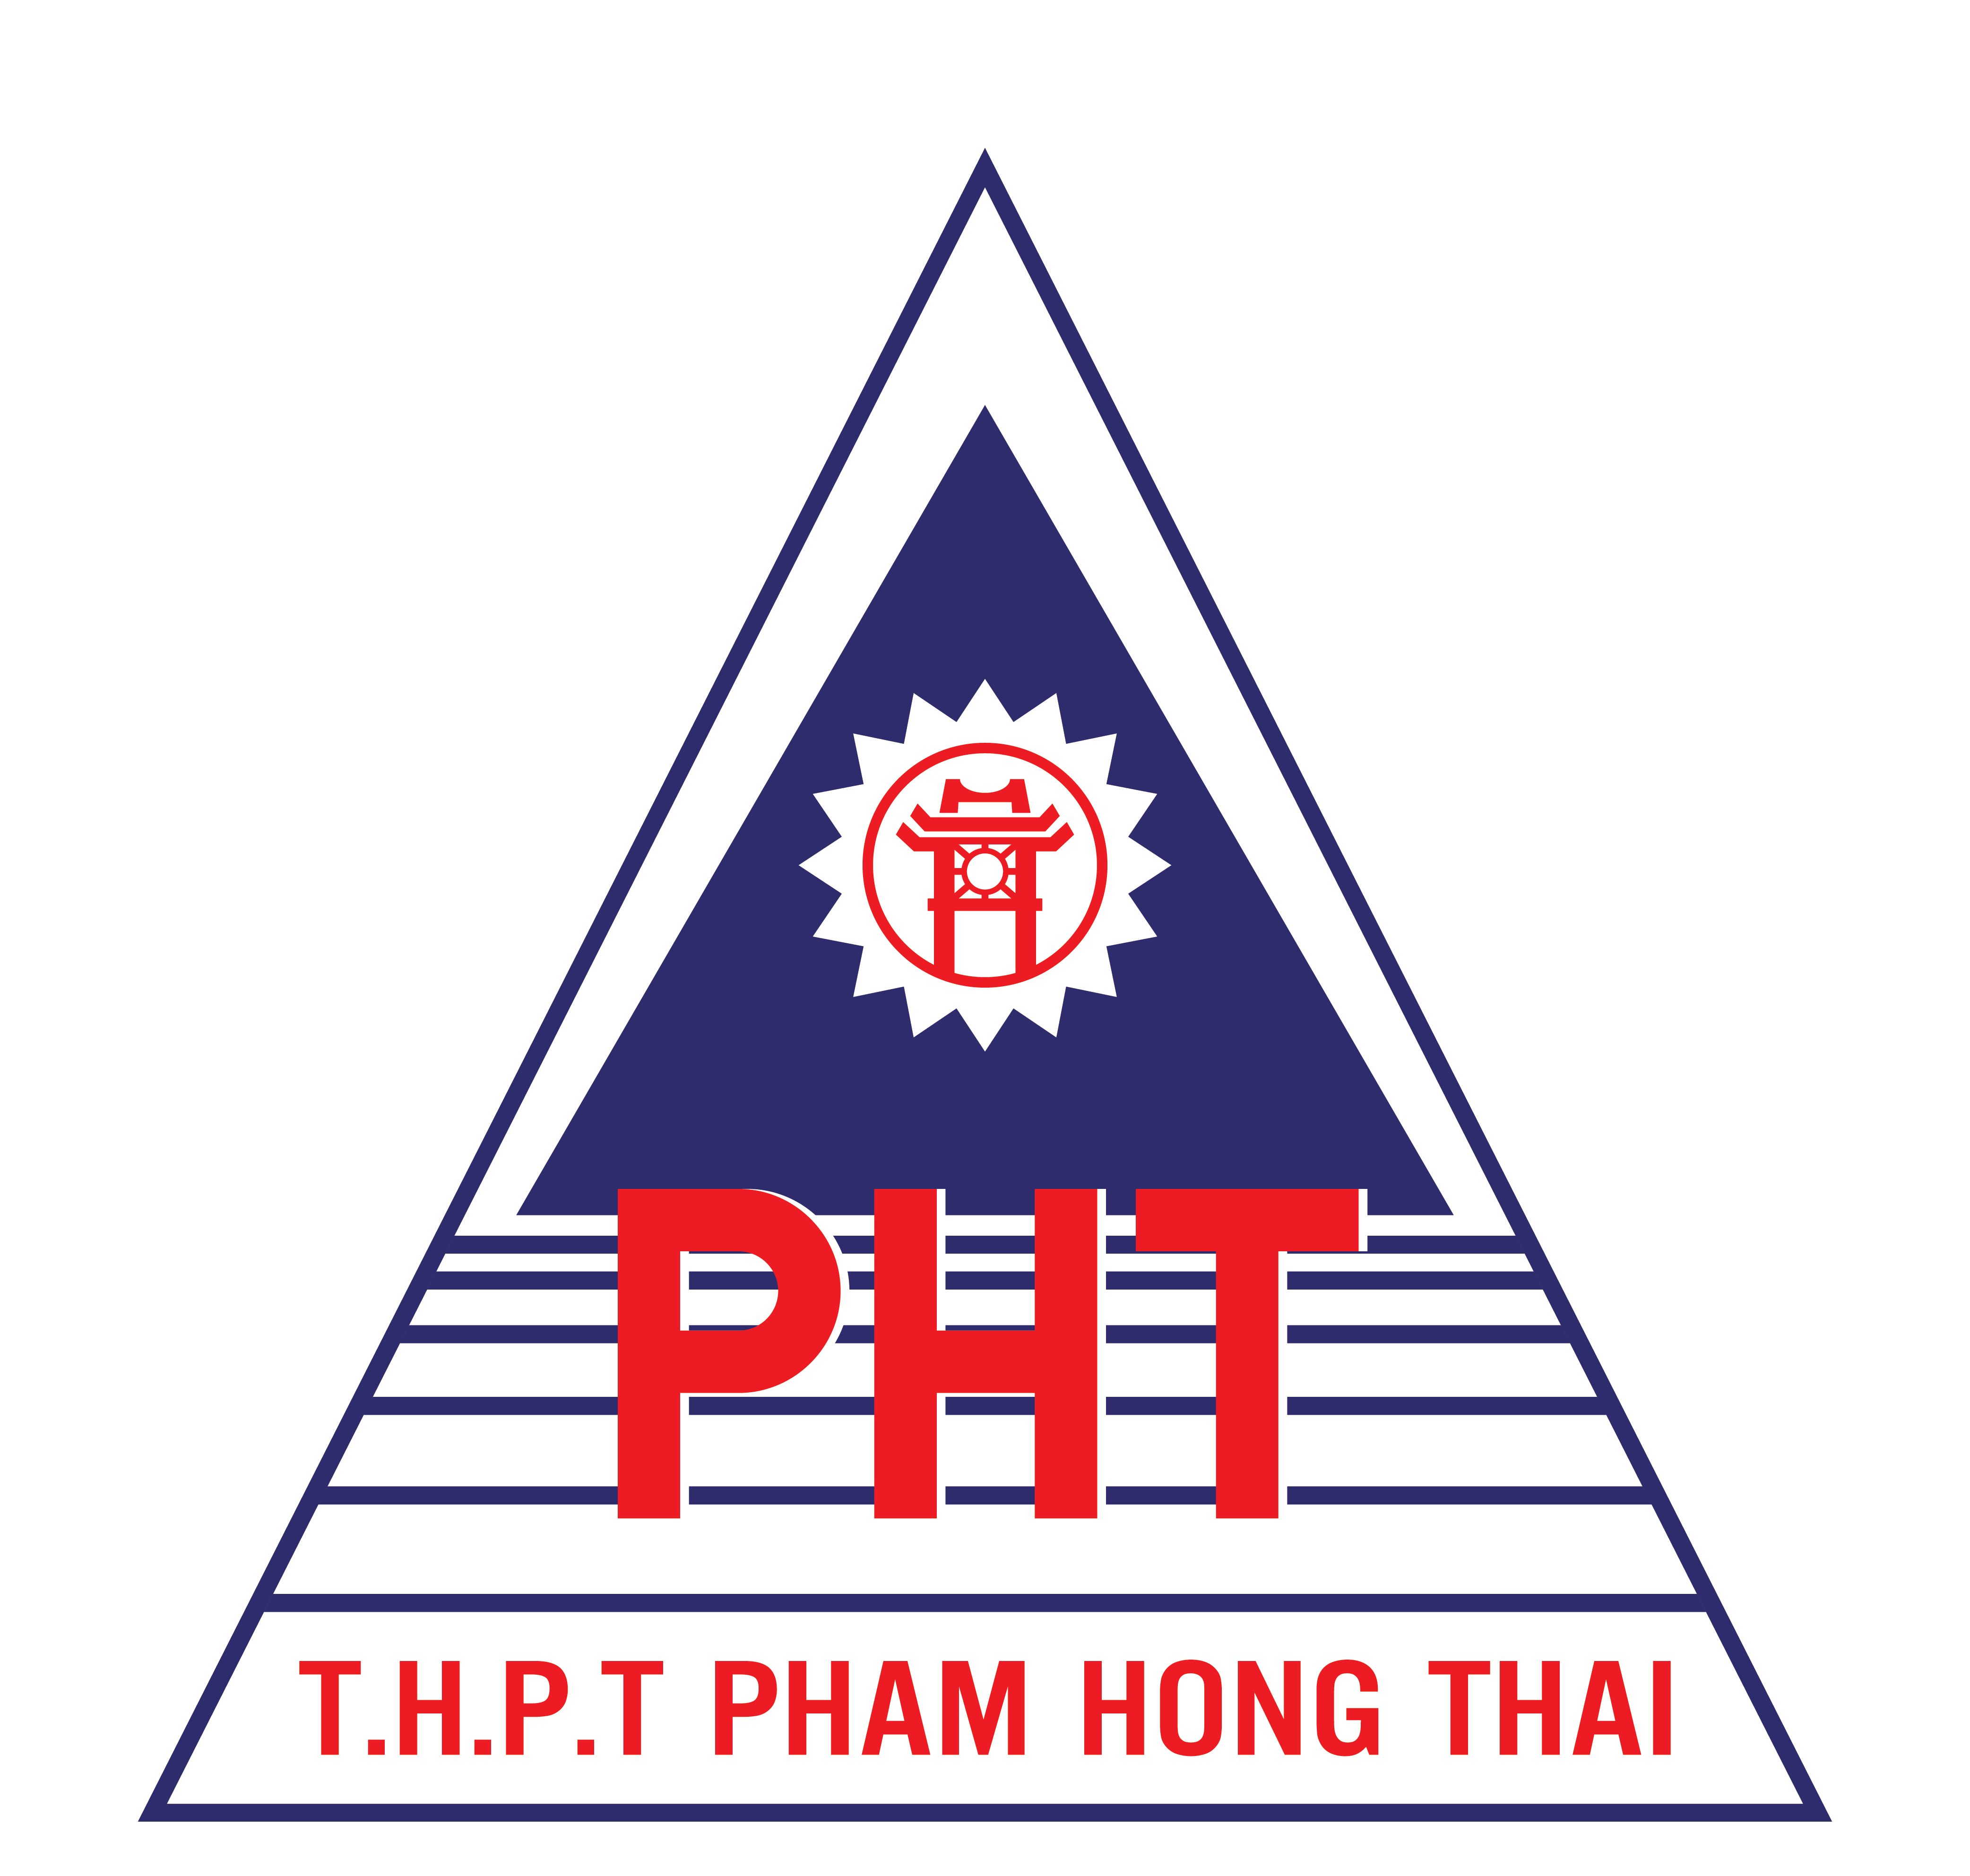 Tải miễn phí 50+ mẫu thiết kế logo trường THPT tại Việt Nam